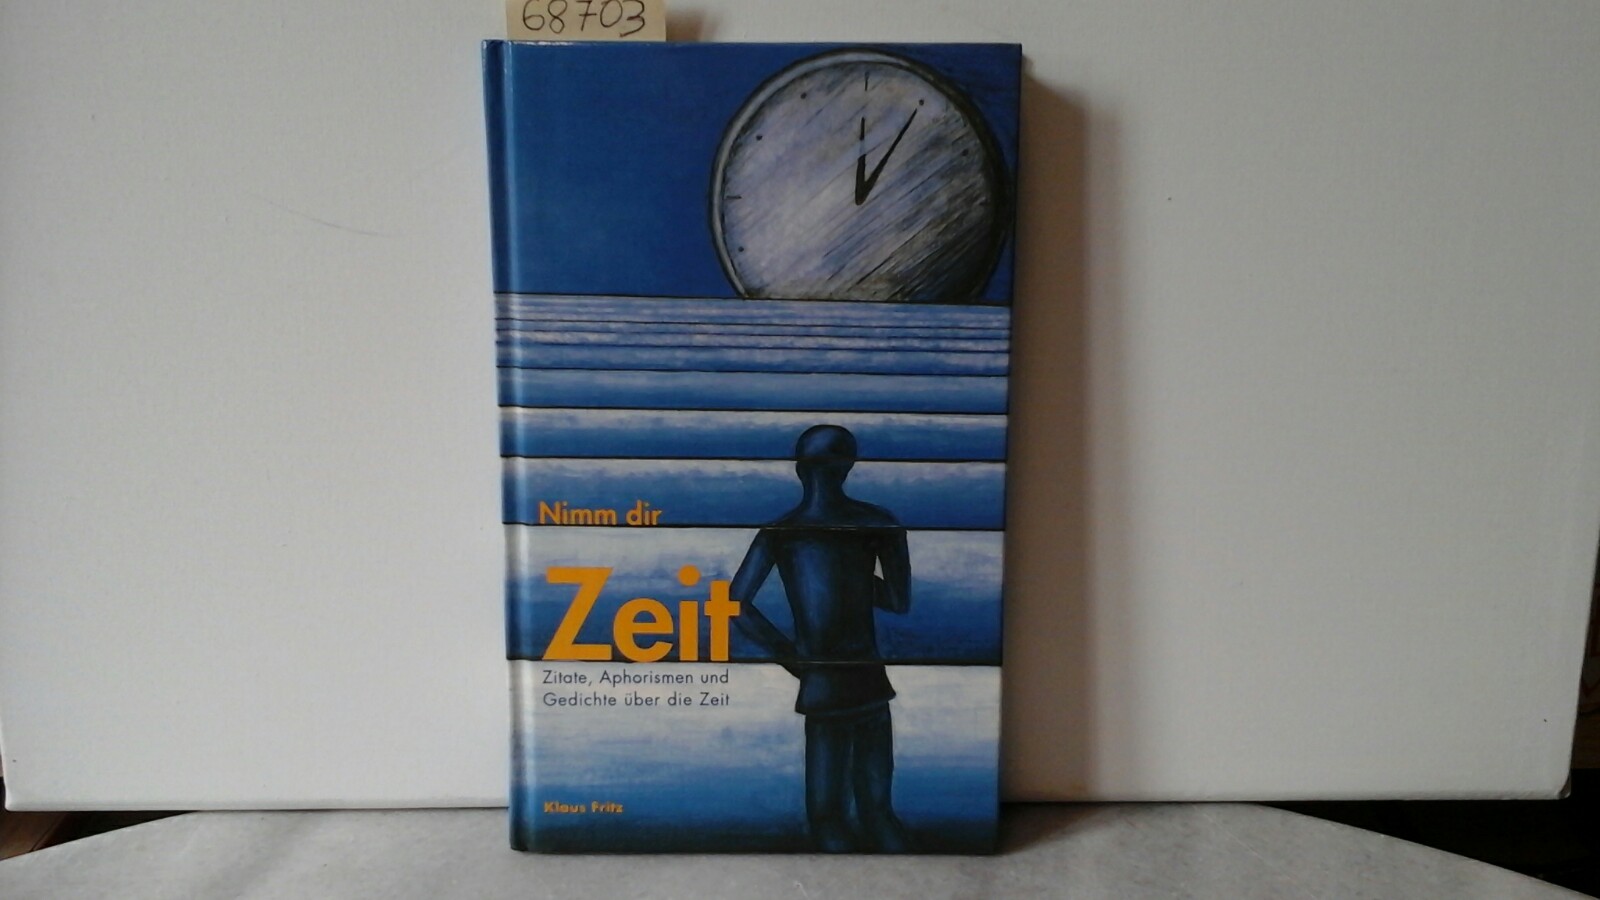 FRITZ, KLAUS (Hrsg.): Nimm dir Zeit. Zitate, Aphorismen und Gedichte ber die Zeit. Dritte /3./ erweiterte Auflage.